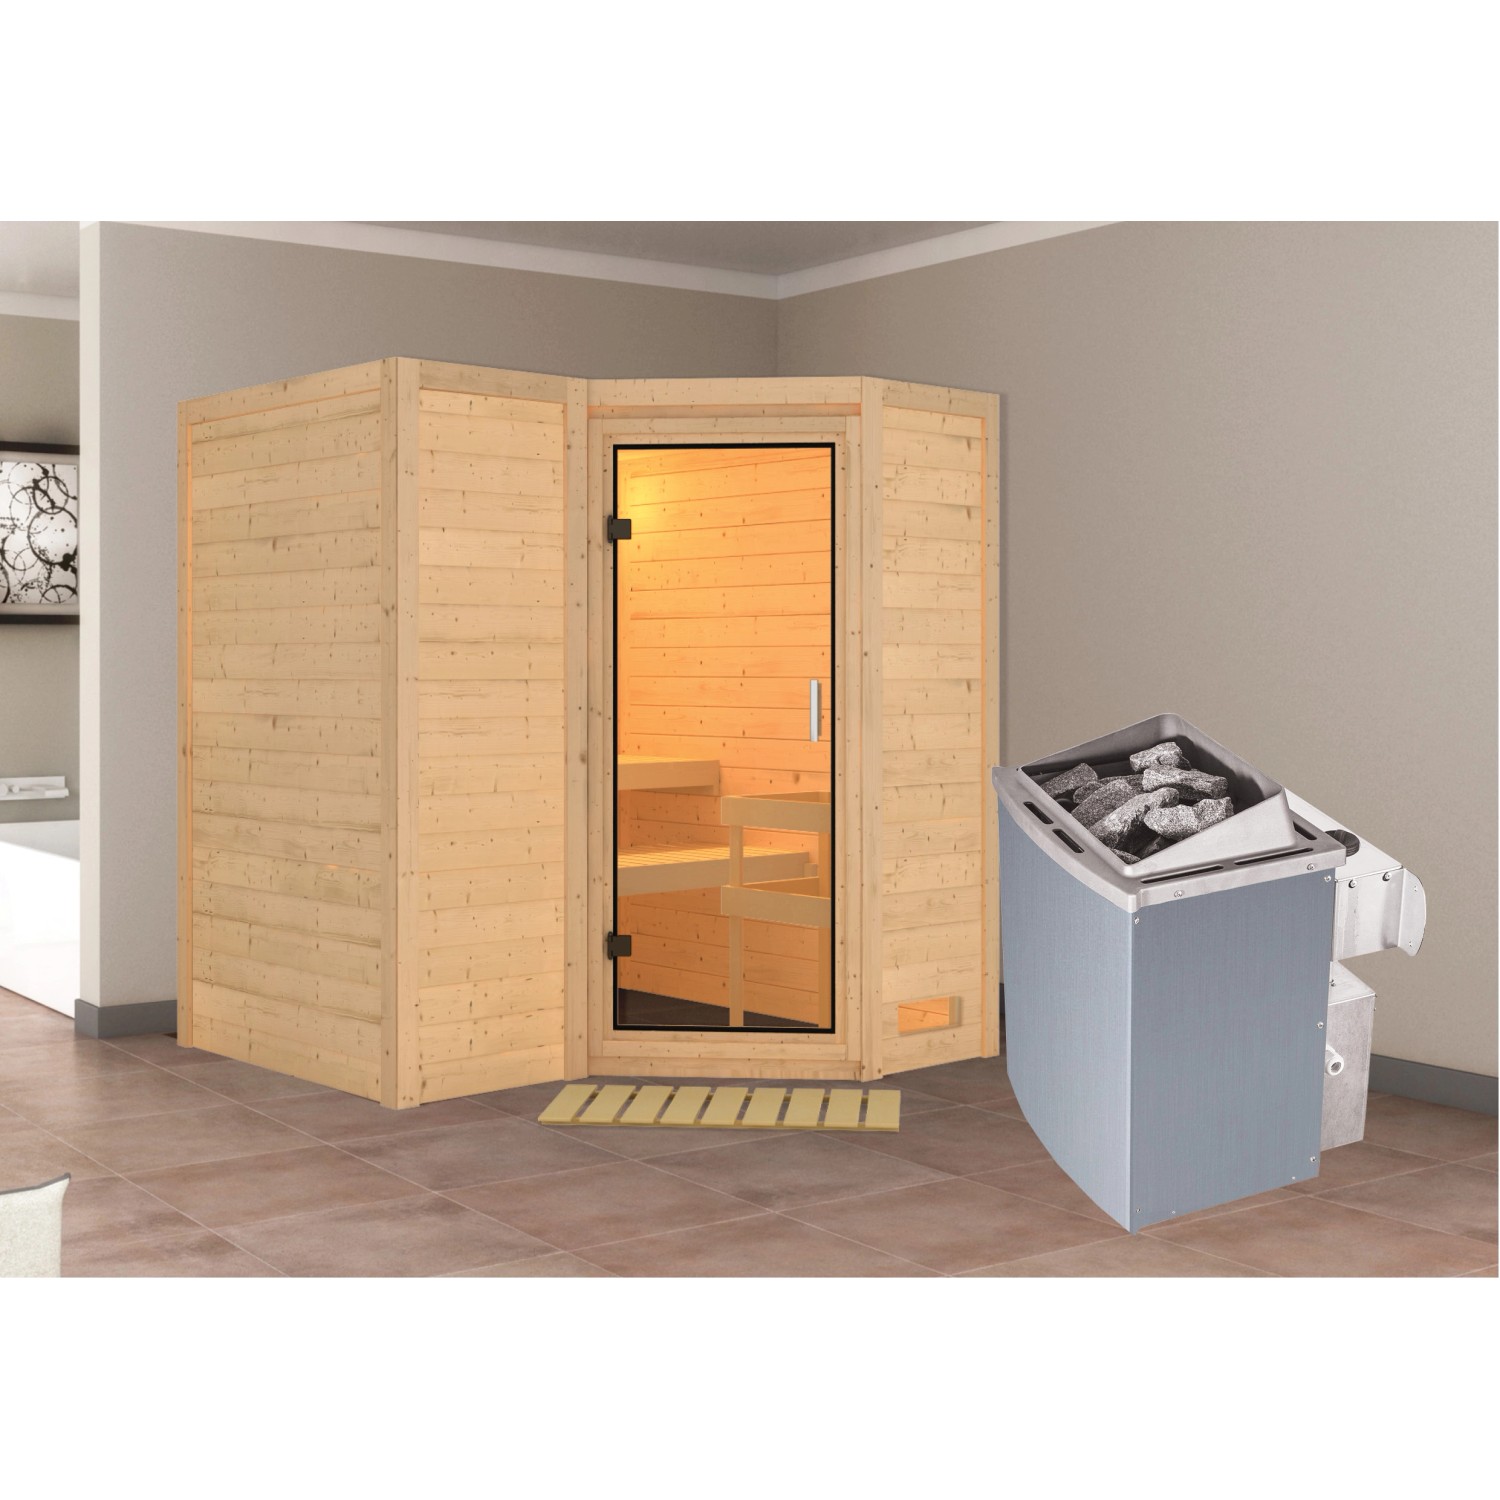 Woodfeeling Sauna Steena 1, Ofen, integrierte Steuerung, Glastür günstig online kaufen